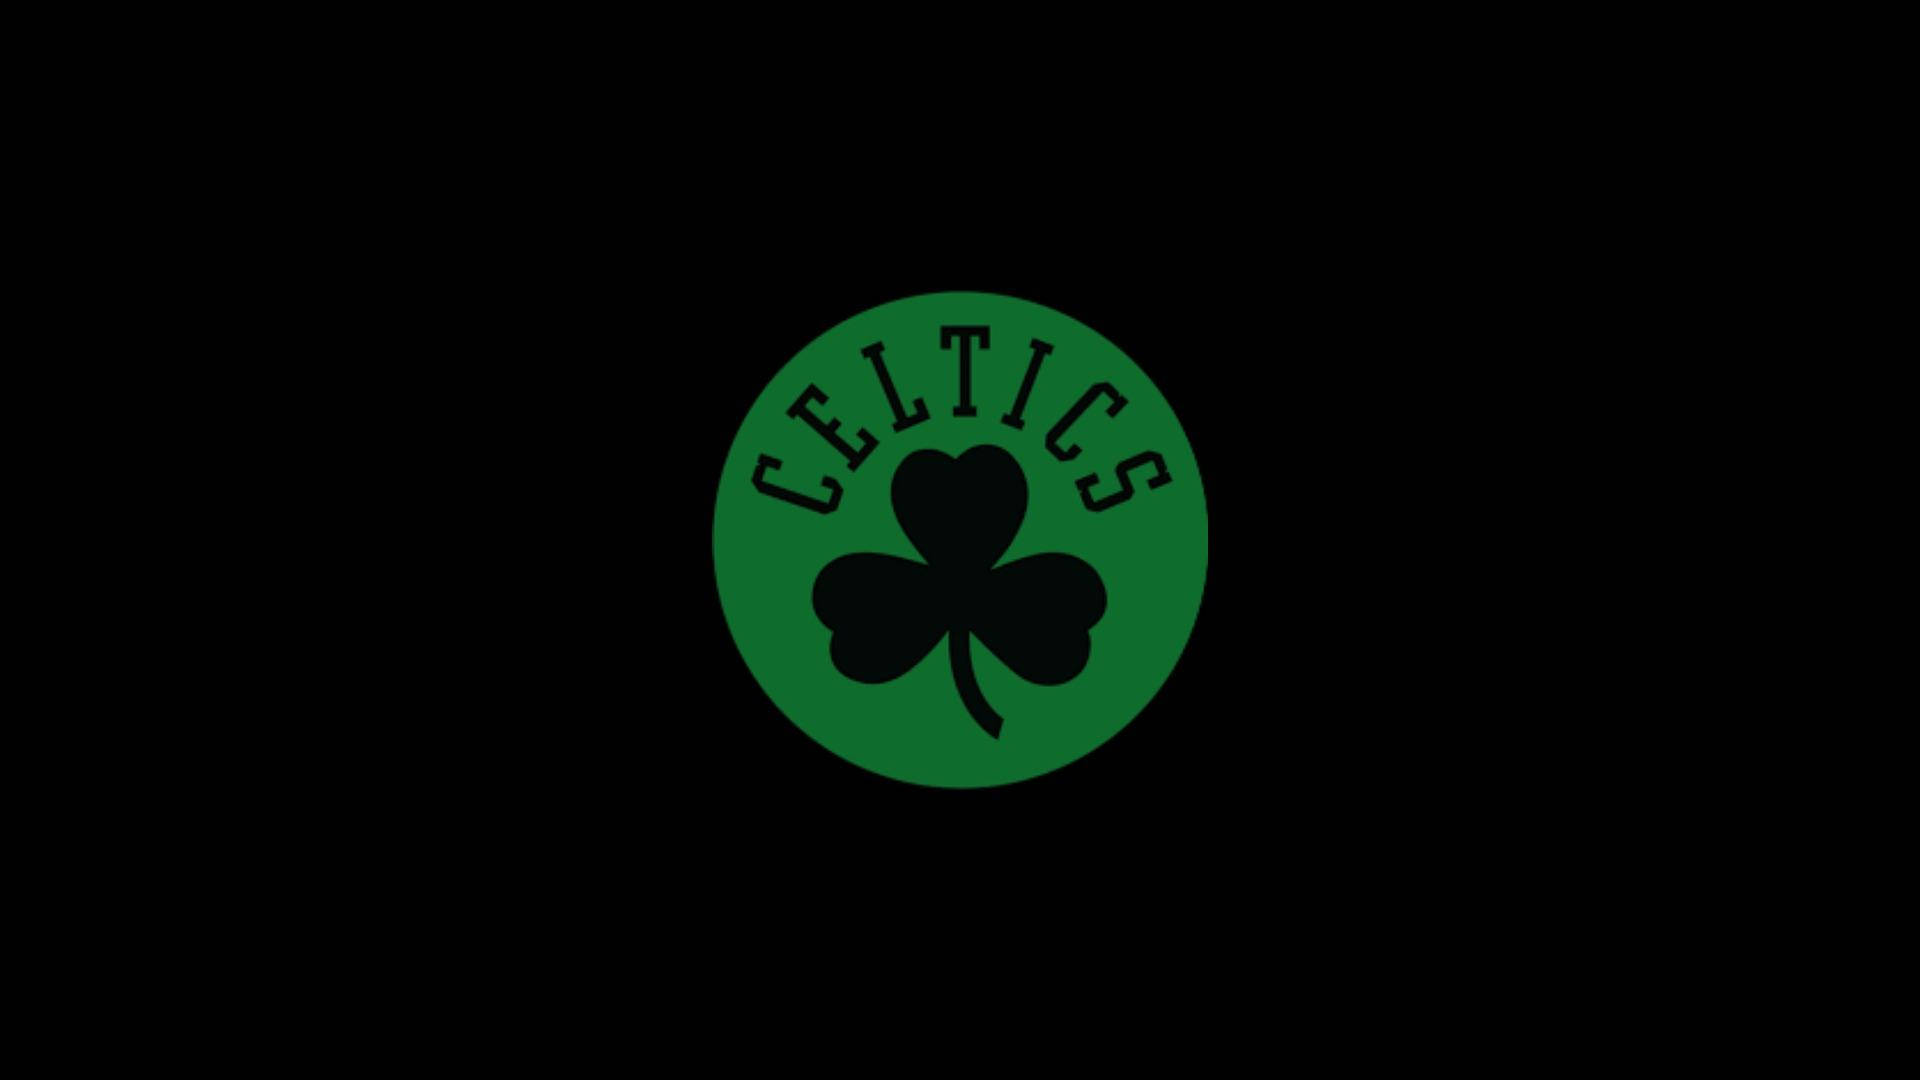 Boston Celtics Dark Logo Background